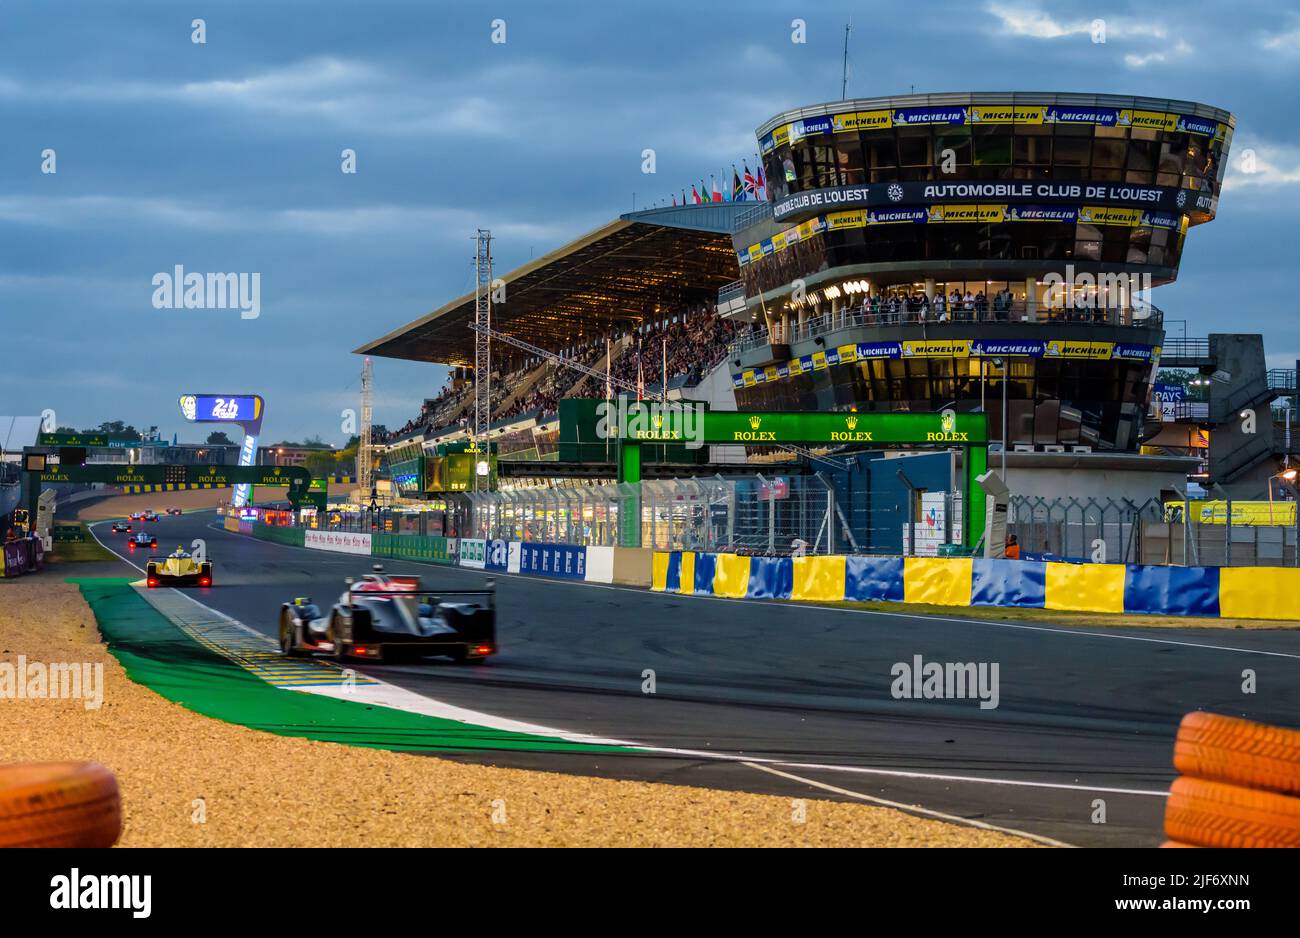 Prototipo y GT coches de carreras en el hoyo recto al anochecer en el circuito de la Sarthe durante las 24 horas de Le Mans. Foto de stock